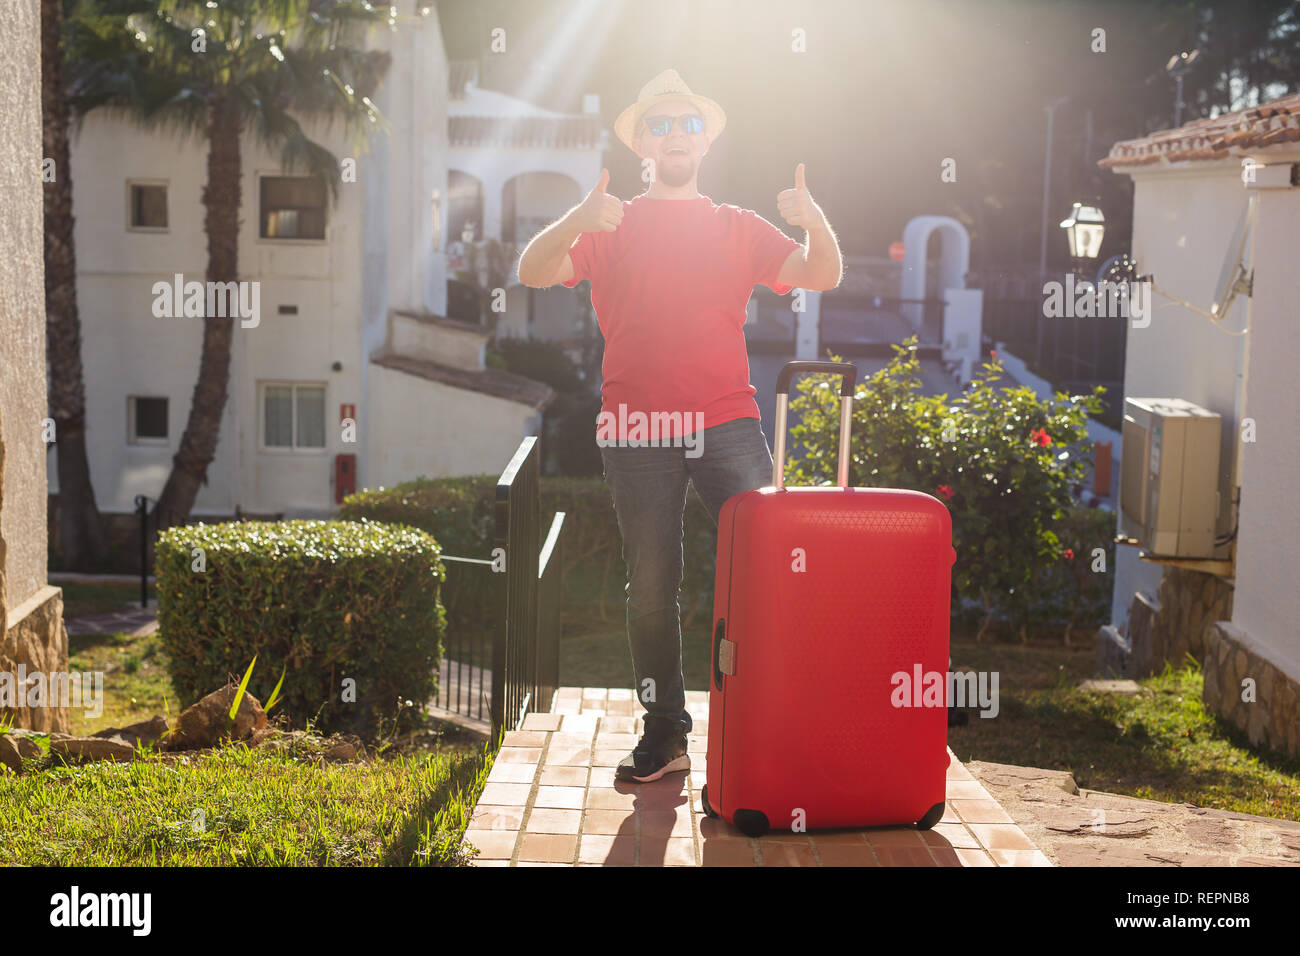 Urlaub, Reisen und Ferien Konzept - stattlicher Mann mit roten Koffer am Hotel angekommen Stockfoto